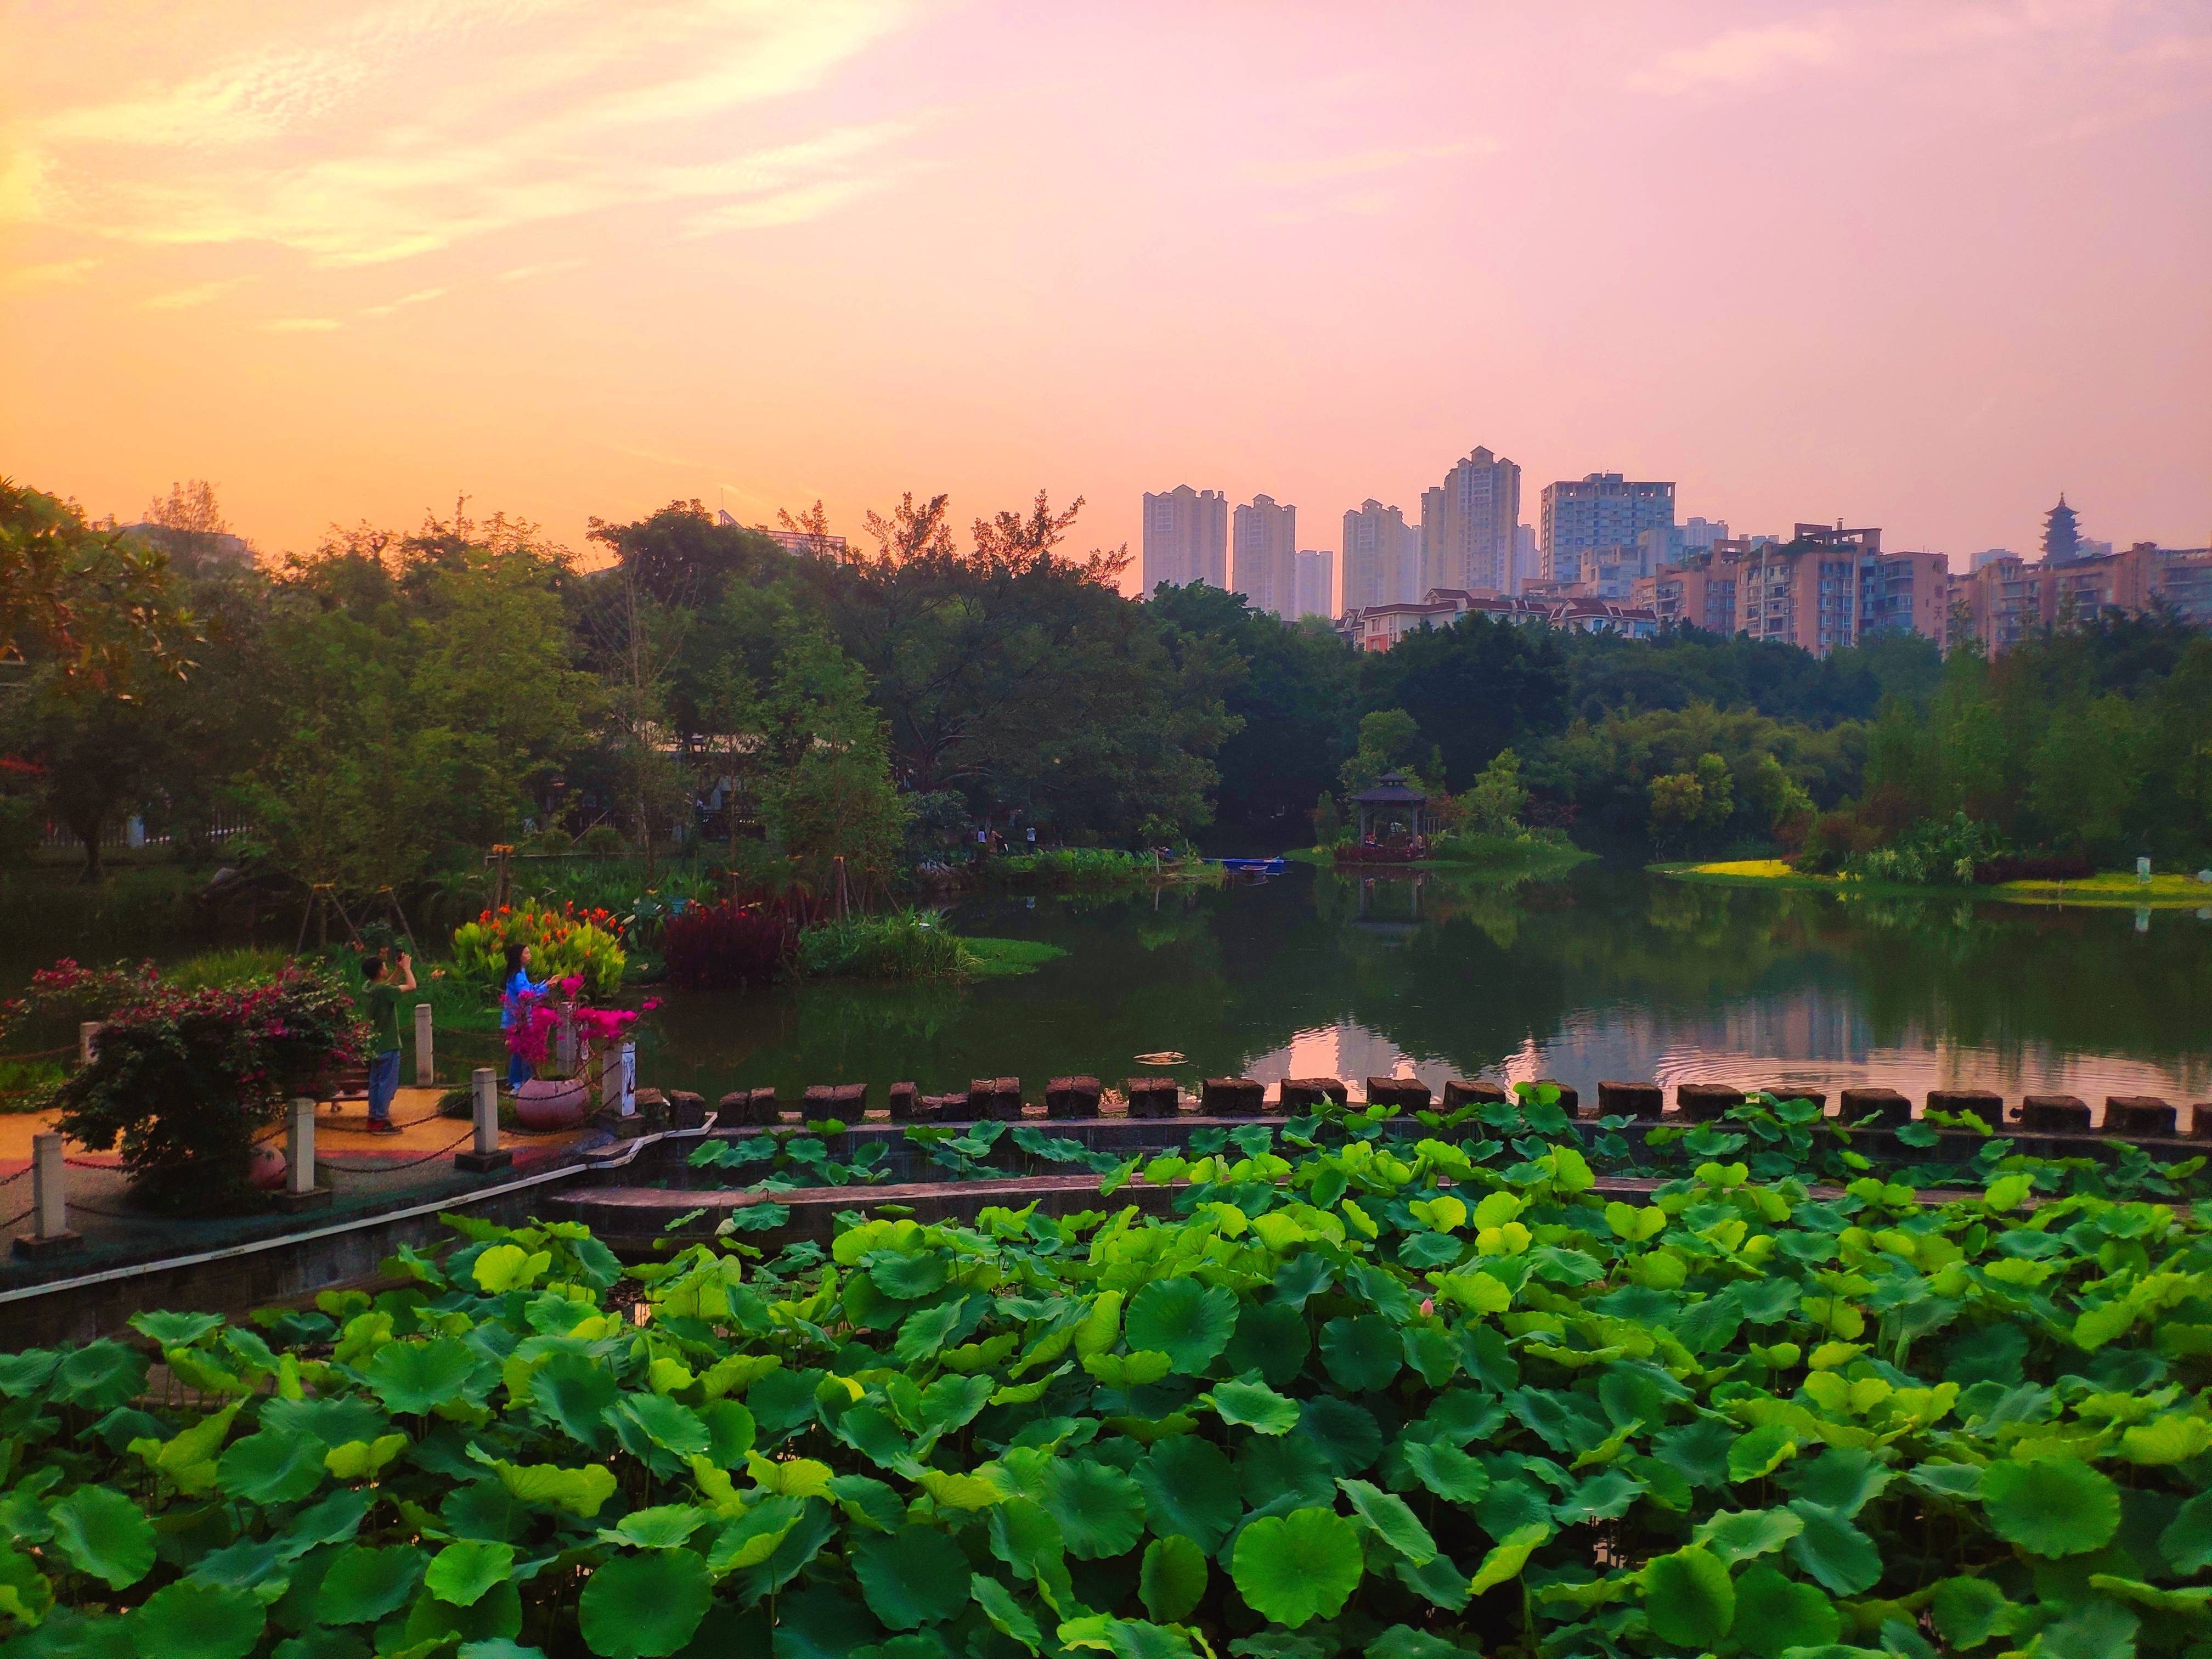 重庆大渡口公园如诗如画：绿树成荫绕步道 植物花卉映湖面